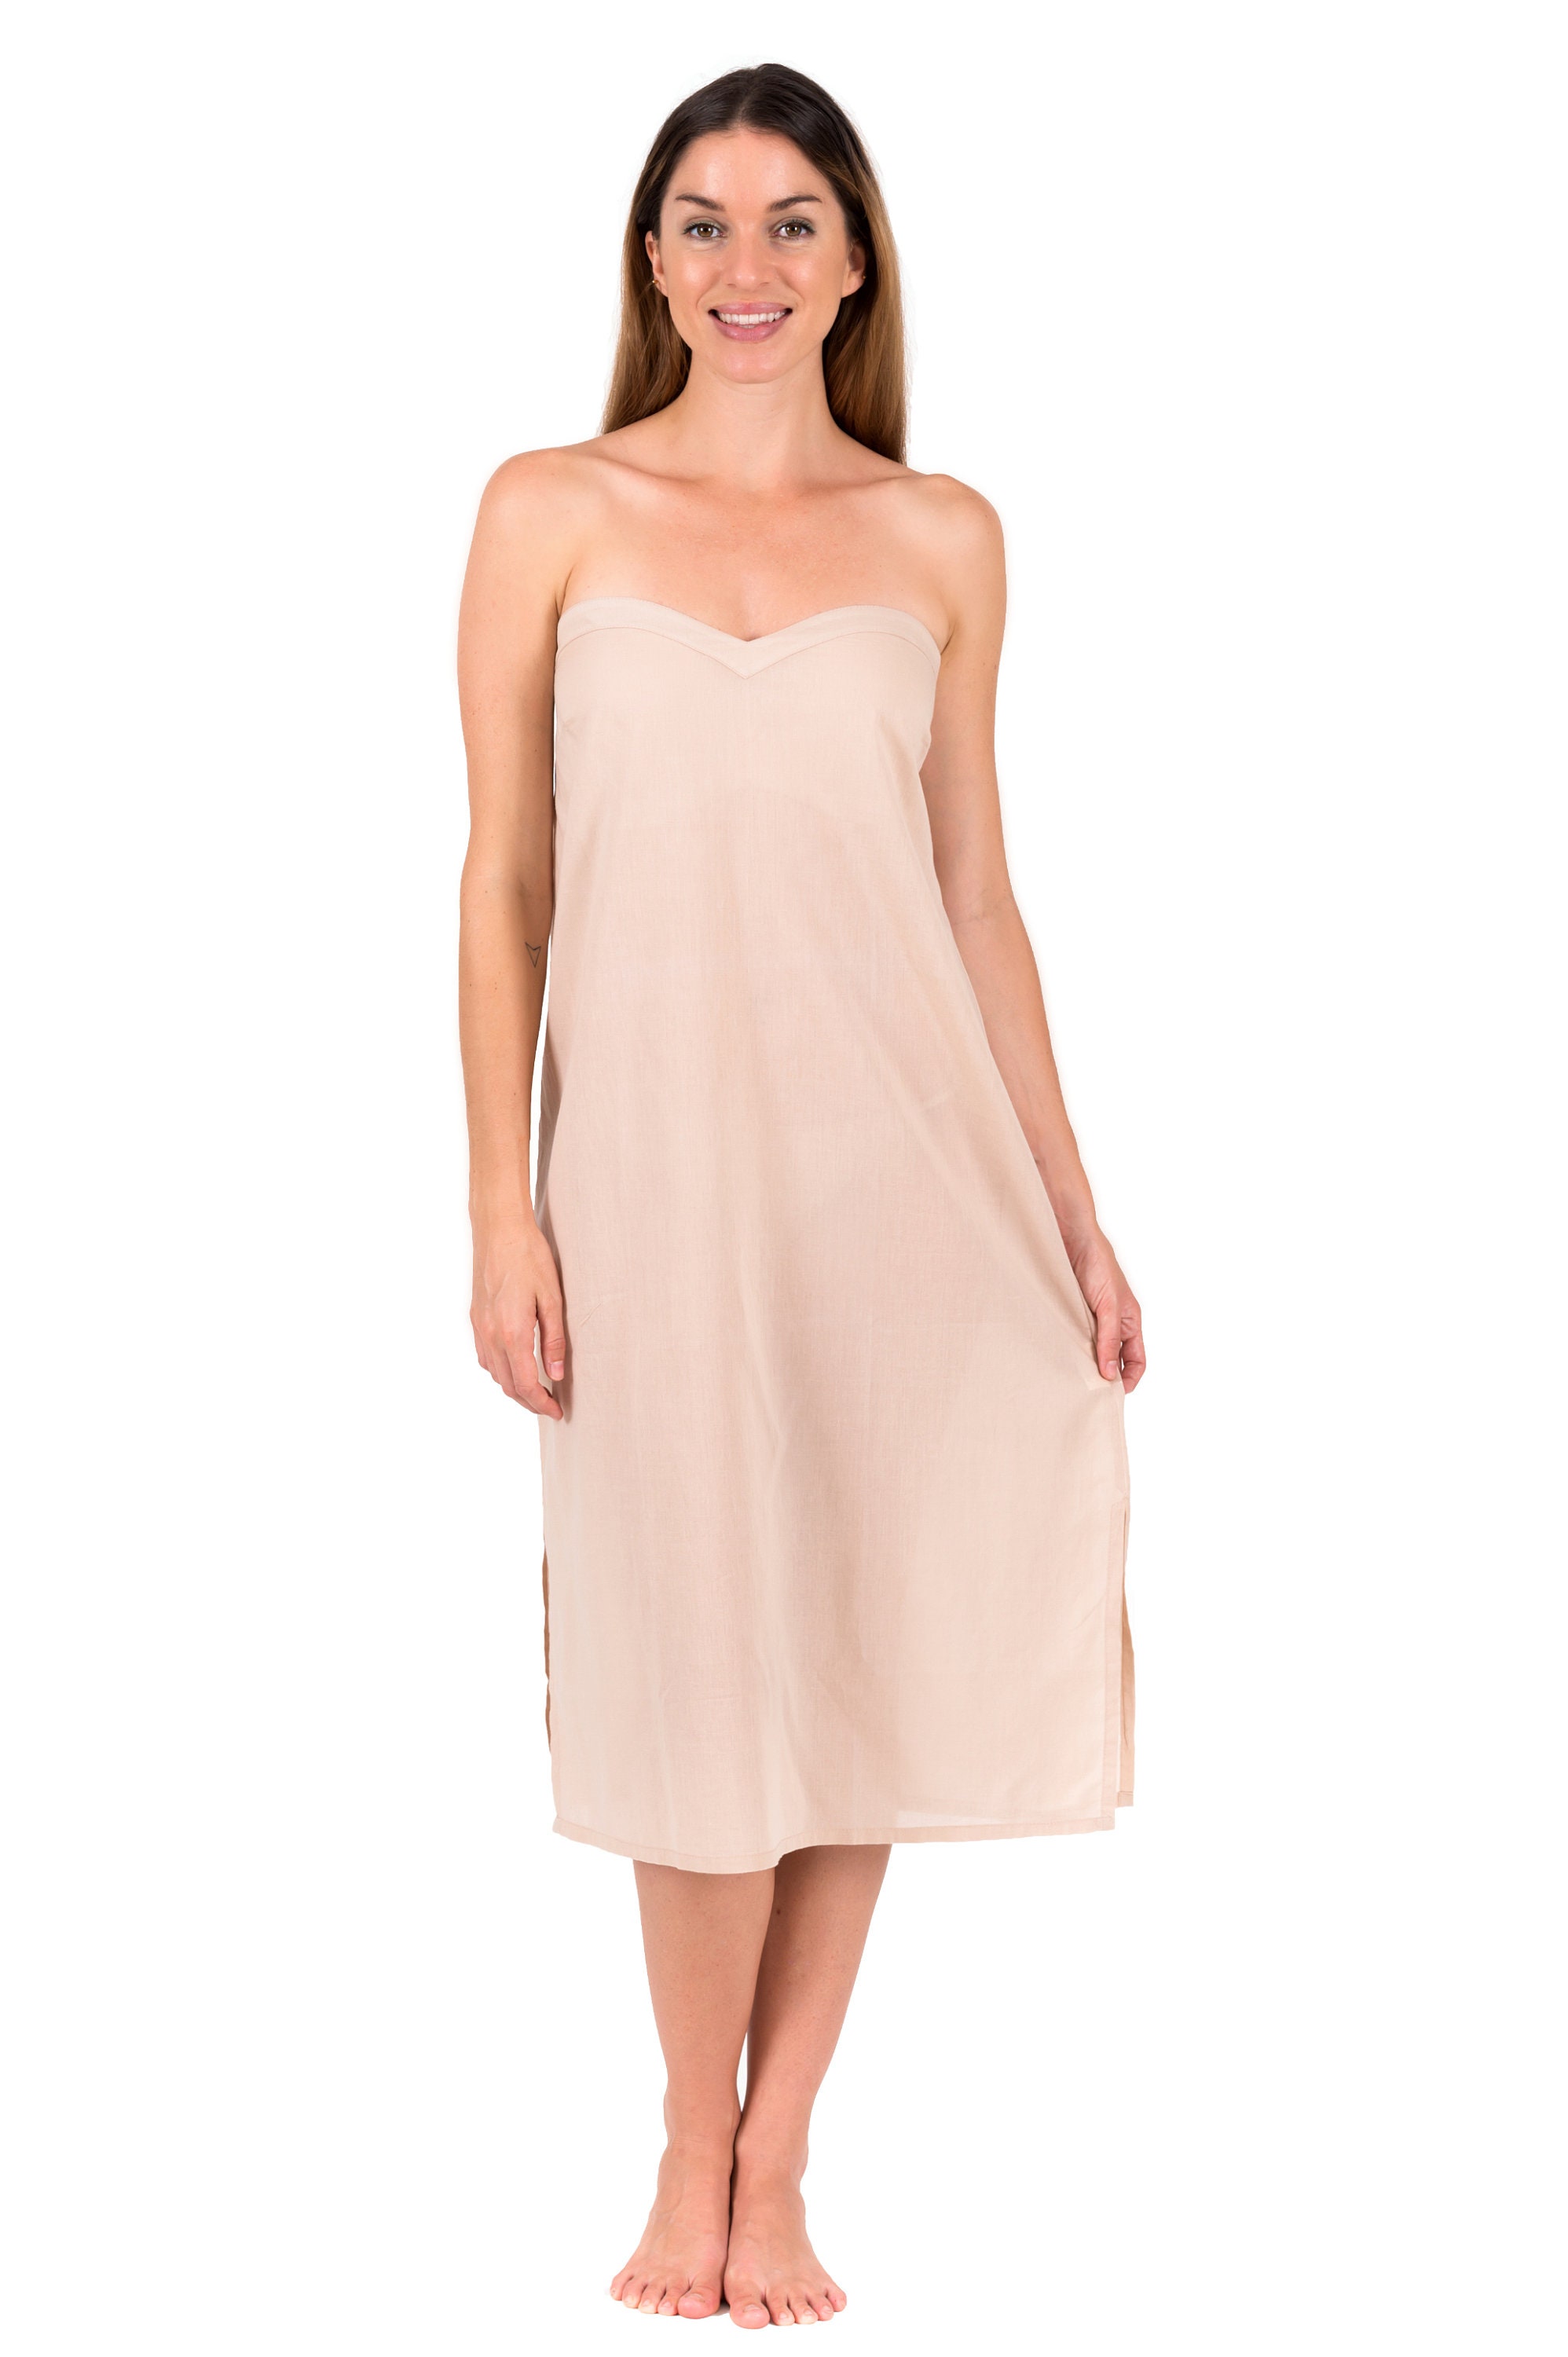 Strapless Cotton Slip Dress Spirituelle Zara Above the Knee Available in  Black, White or Crema warm Beige 